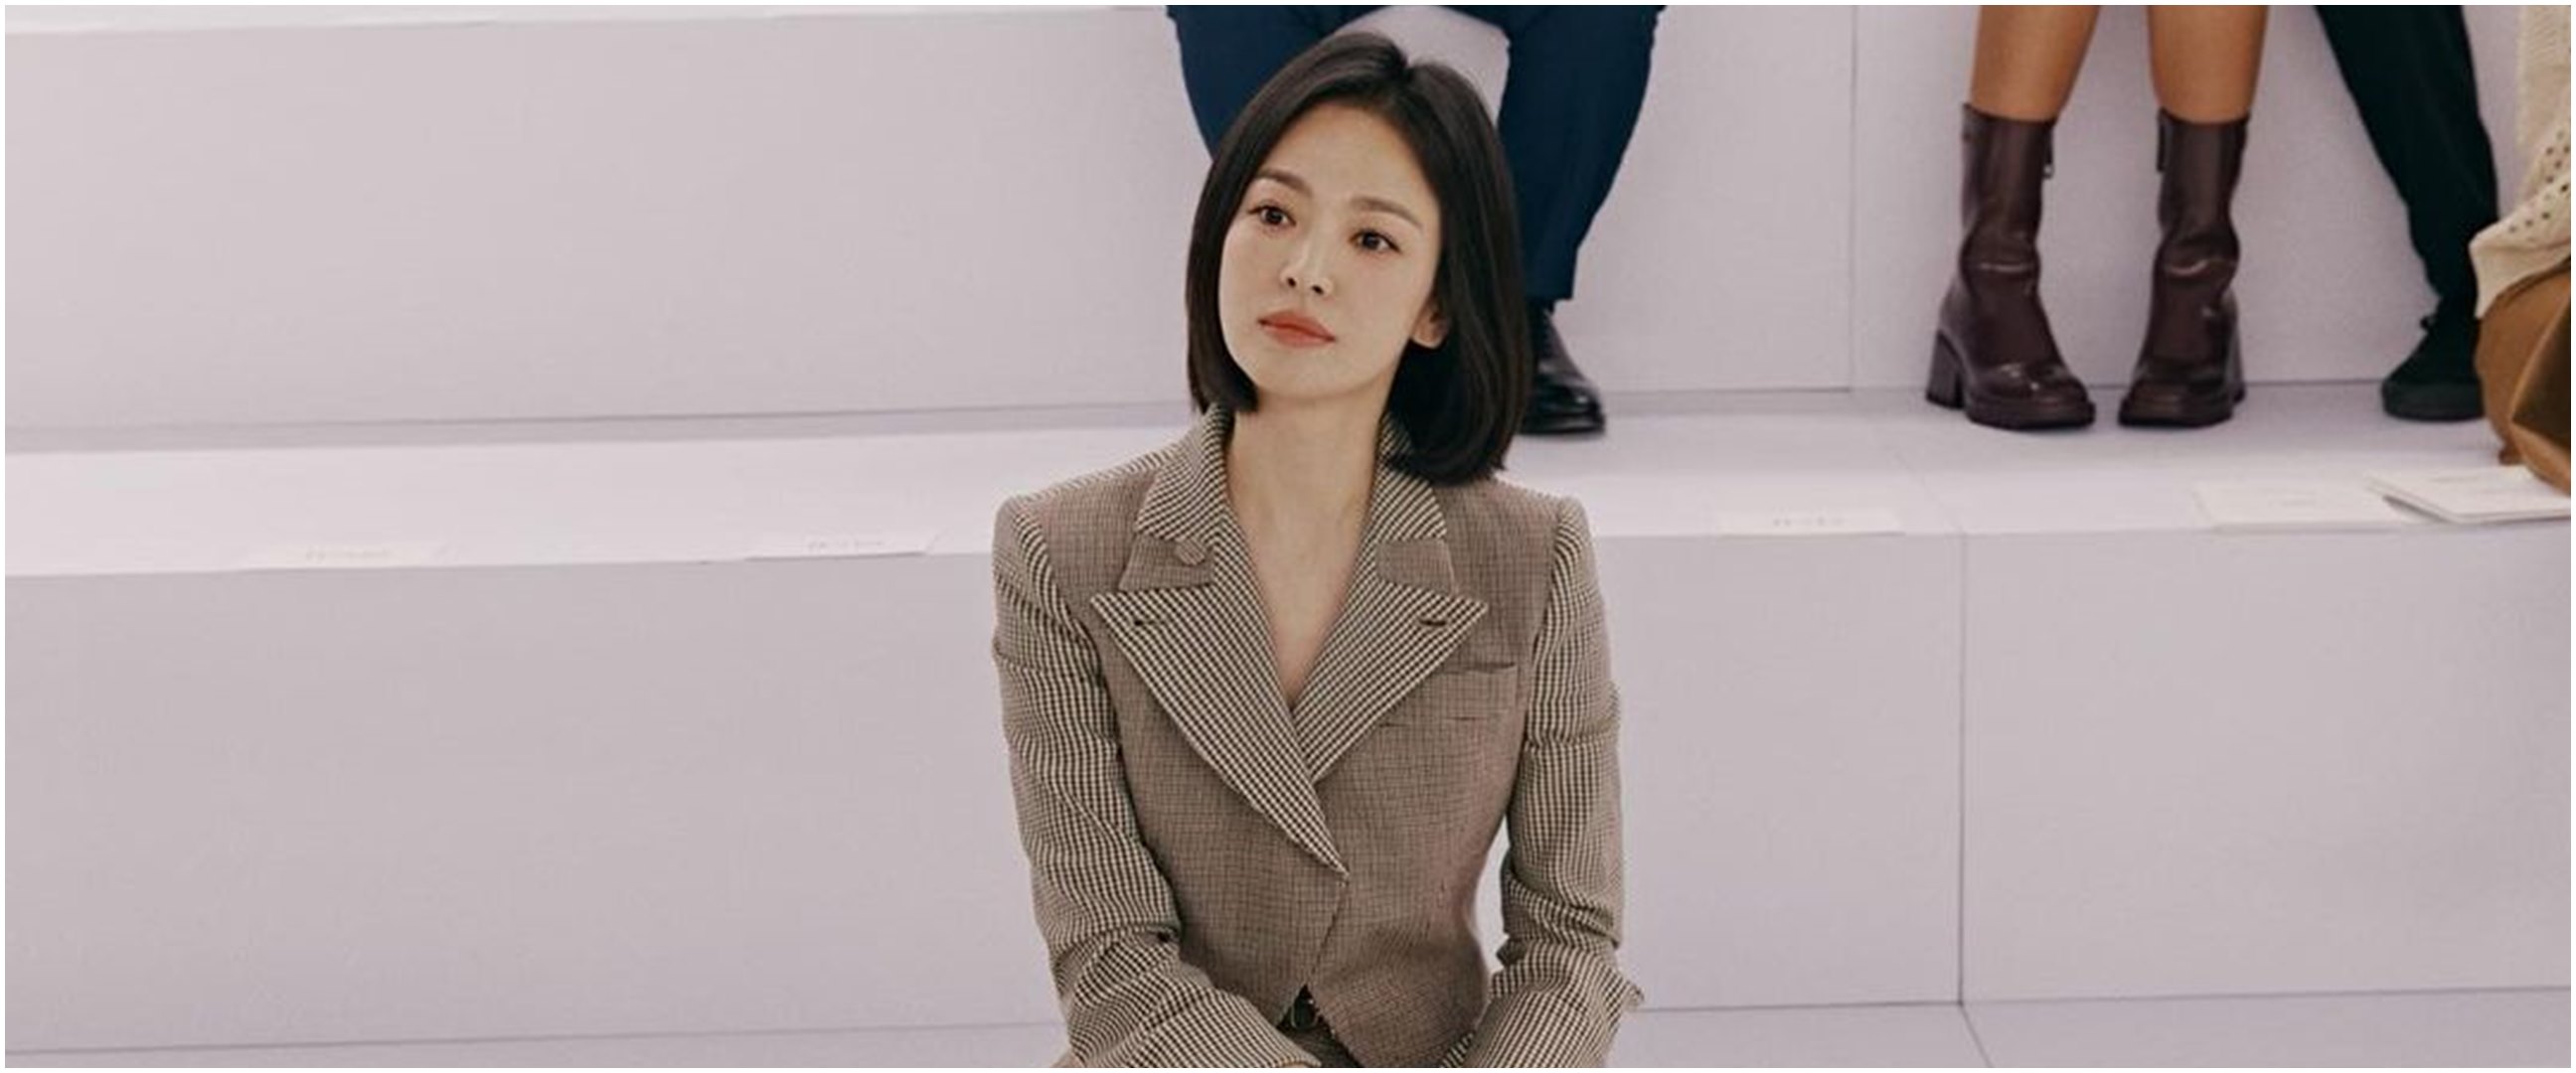 Viral potret Song Hye-kyo saat SMP versus sekarang, perbandingannya bikin syok